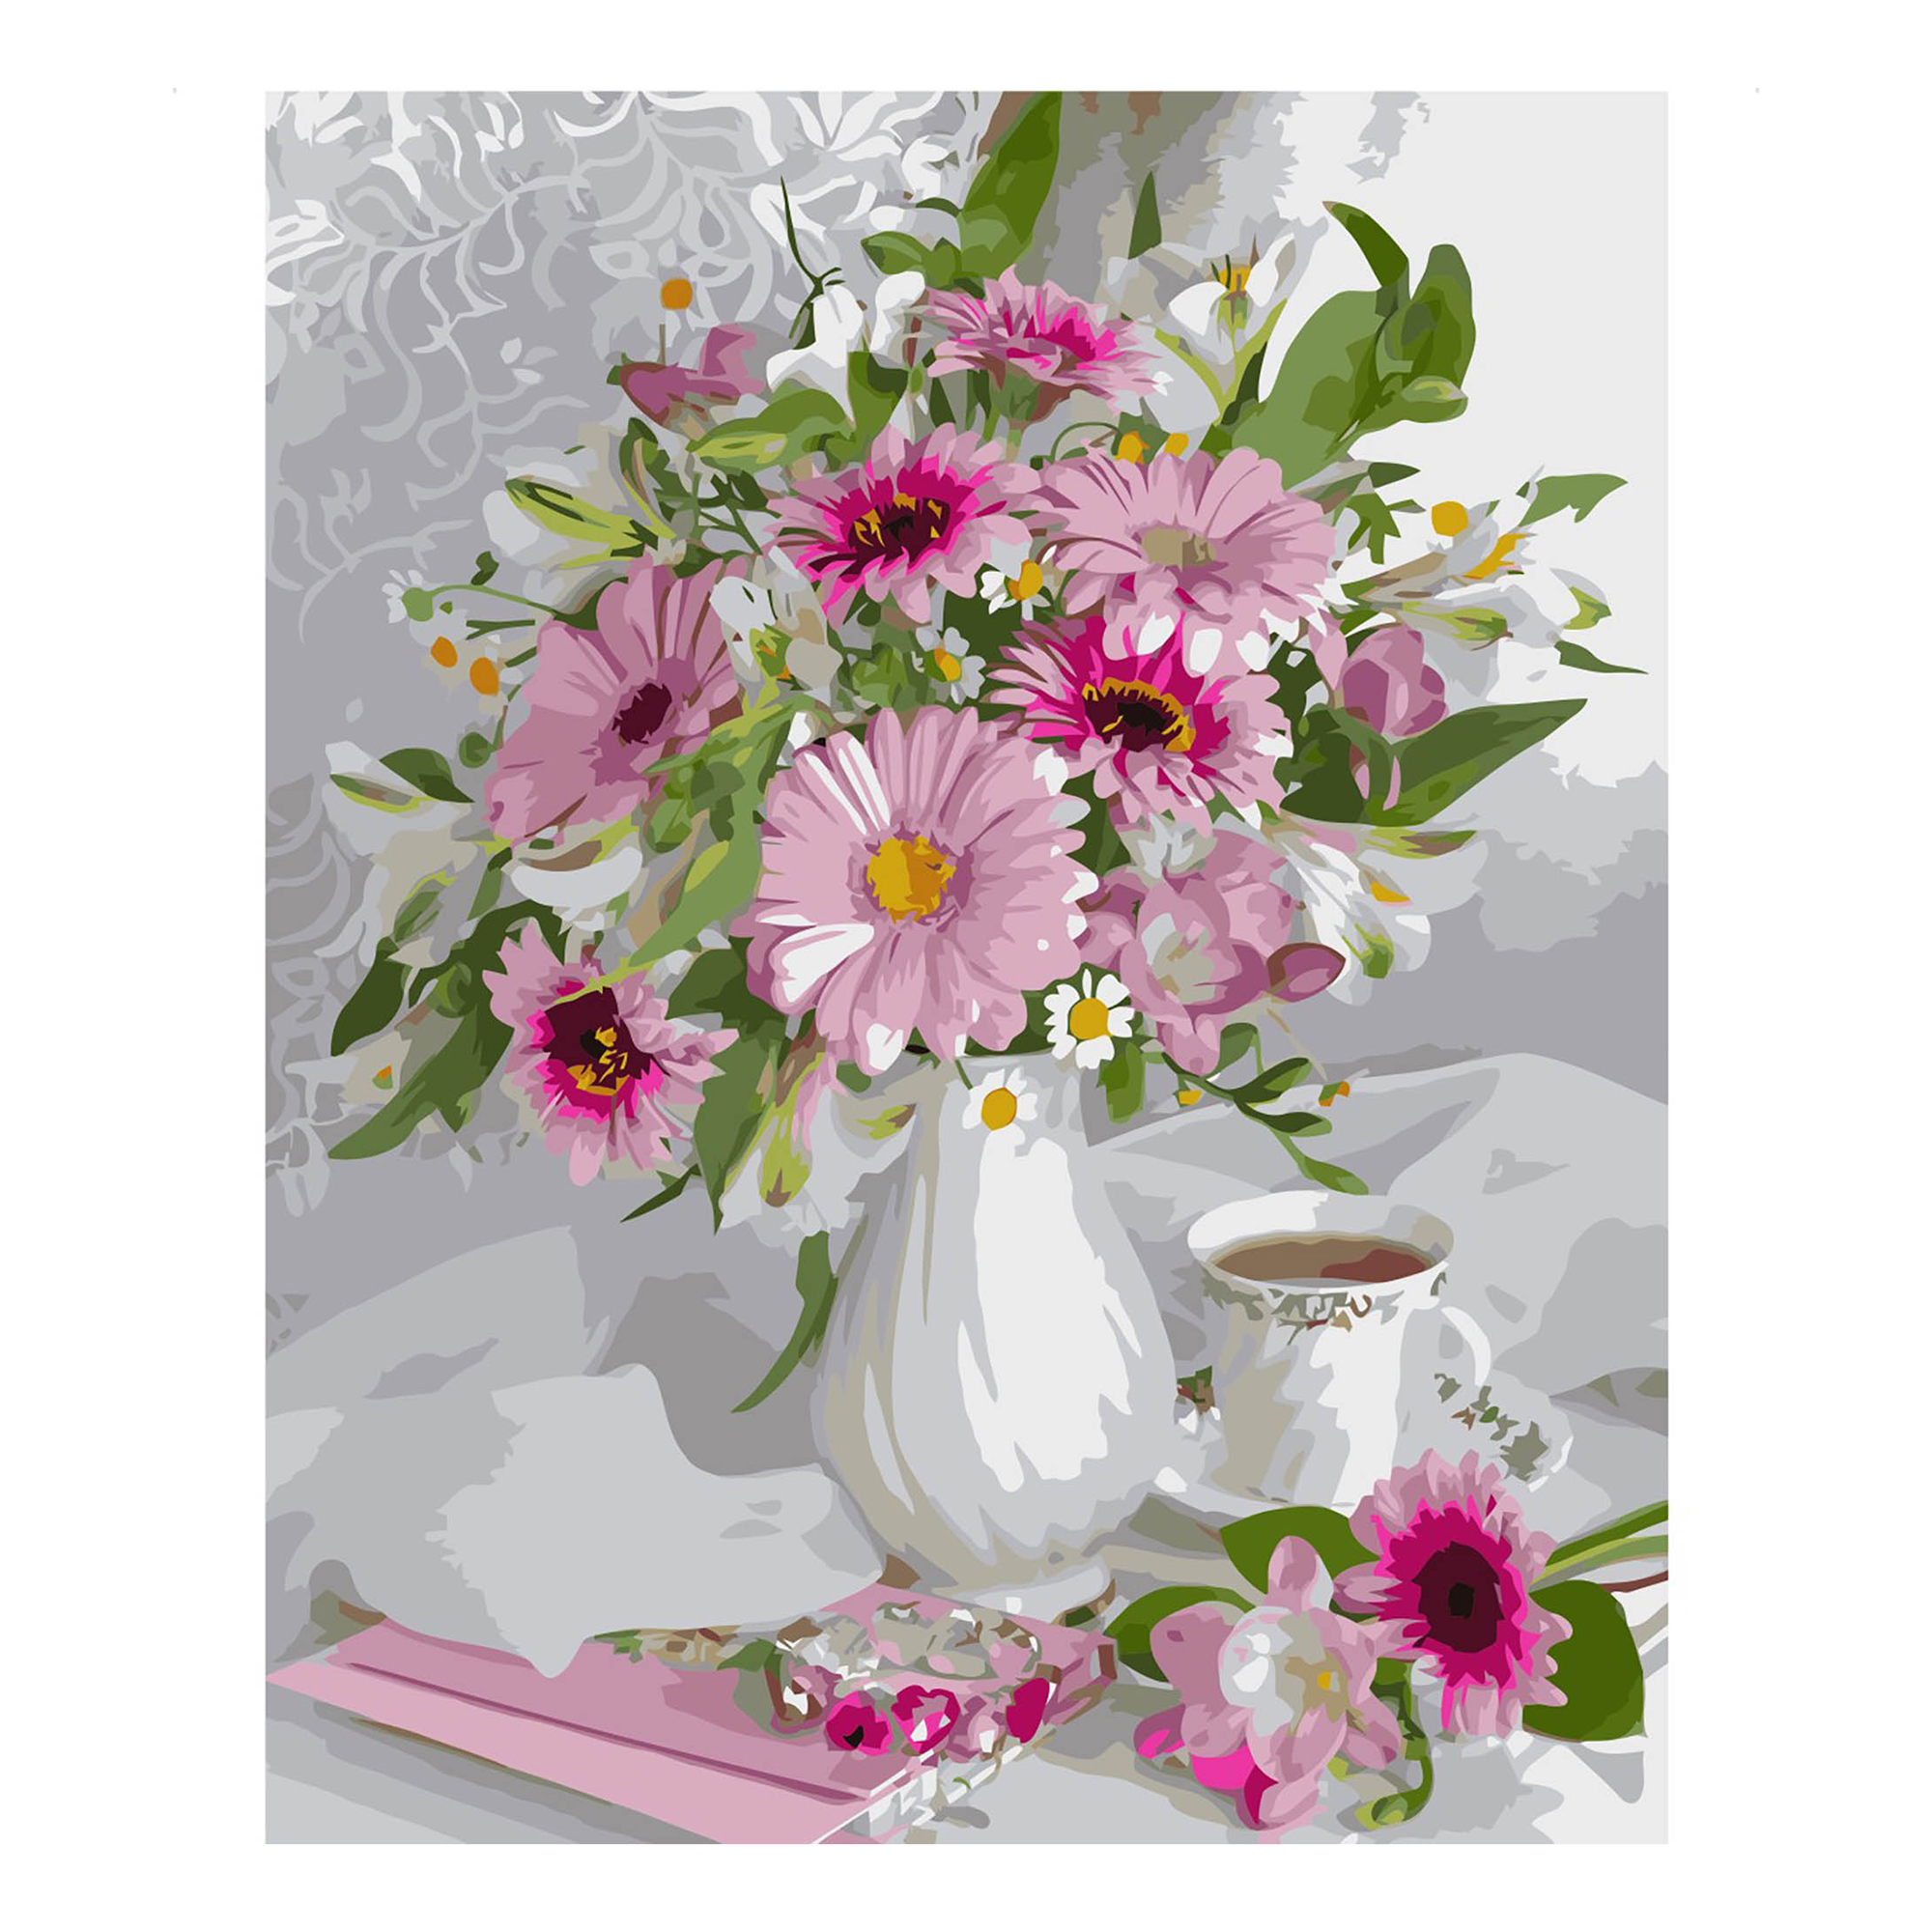 Malen nach Zahlen Strateg Blumenstrauß aus rosa Gerbera auf farbigem Hintergrund, Größe 40x50 cm (VA-2539)